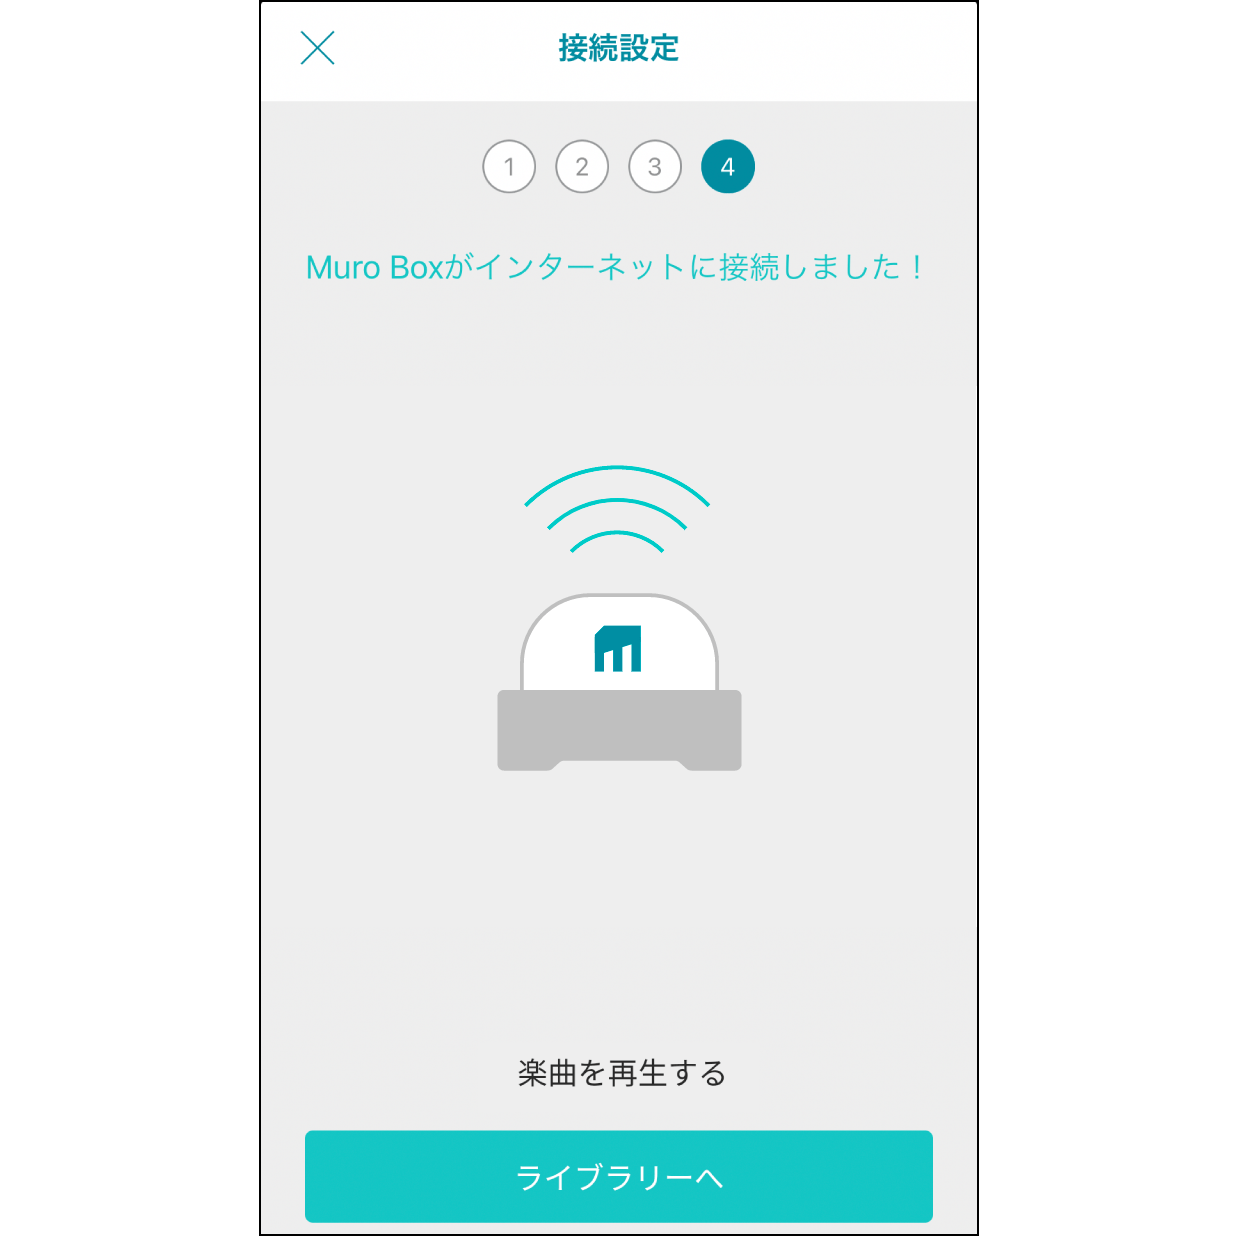 10. Muro Box Wi-Fiに接続接続が完了するとMuro Boxから通知音が鳴り、「Muro Boxに接続完了」と表示されます。その後、「プレイリストに行く」をクリックし、曲を再生できます。